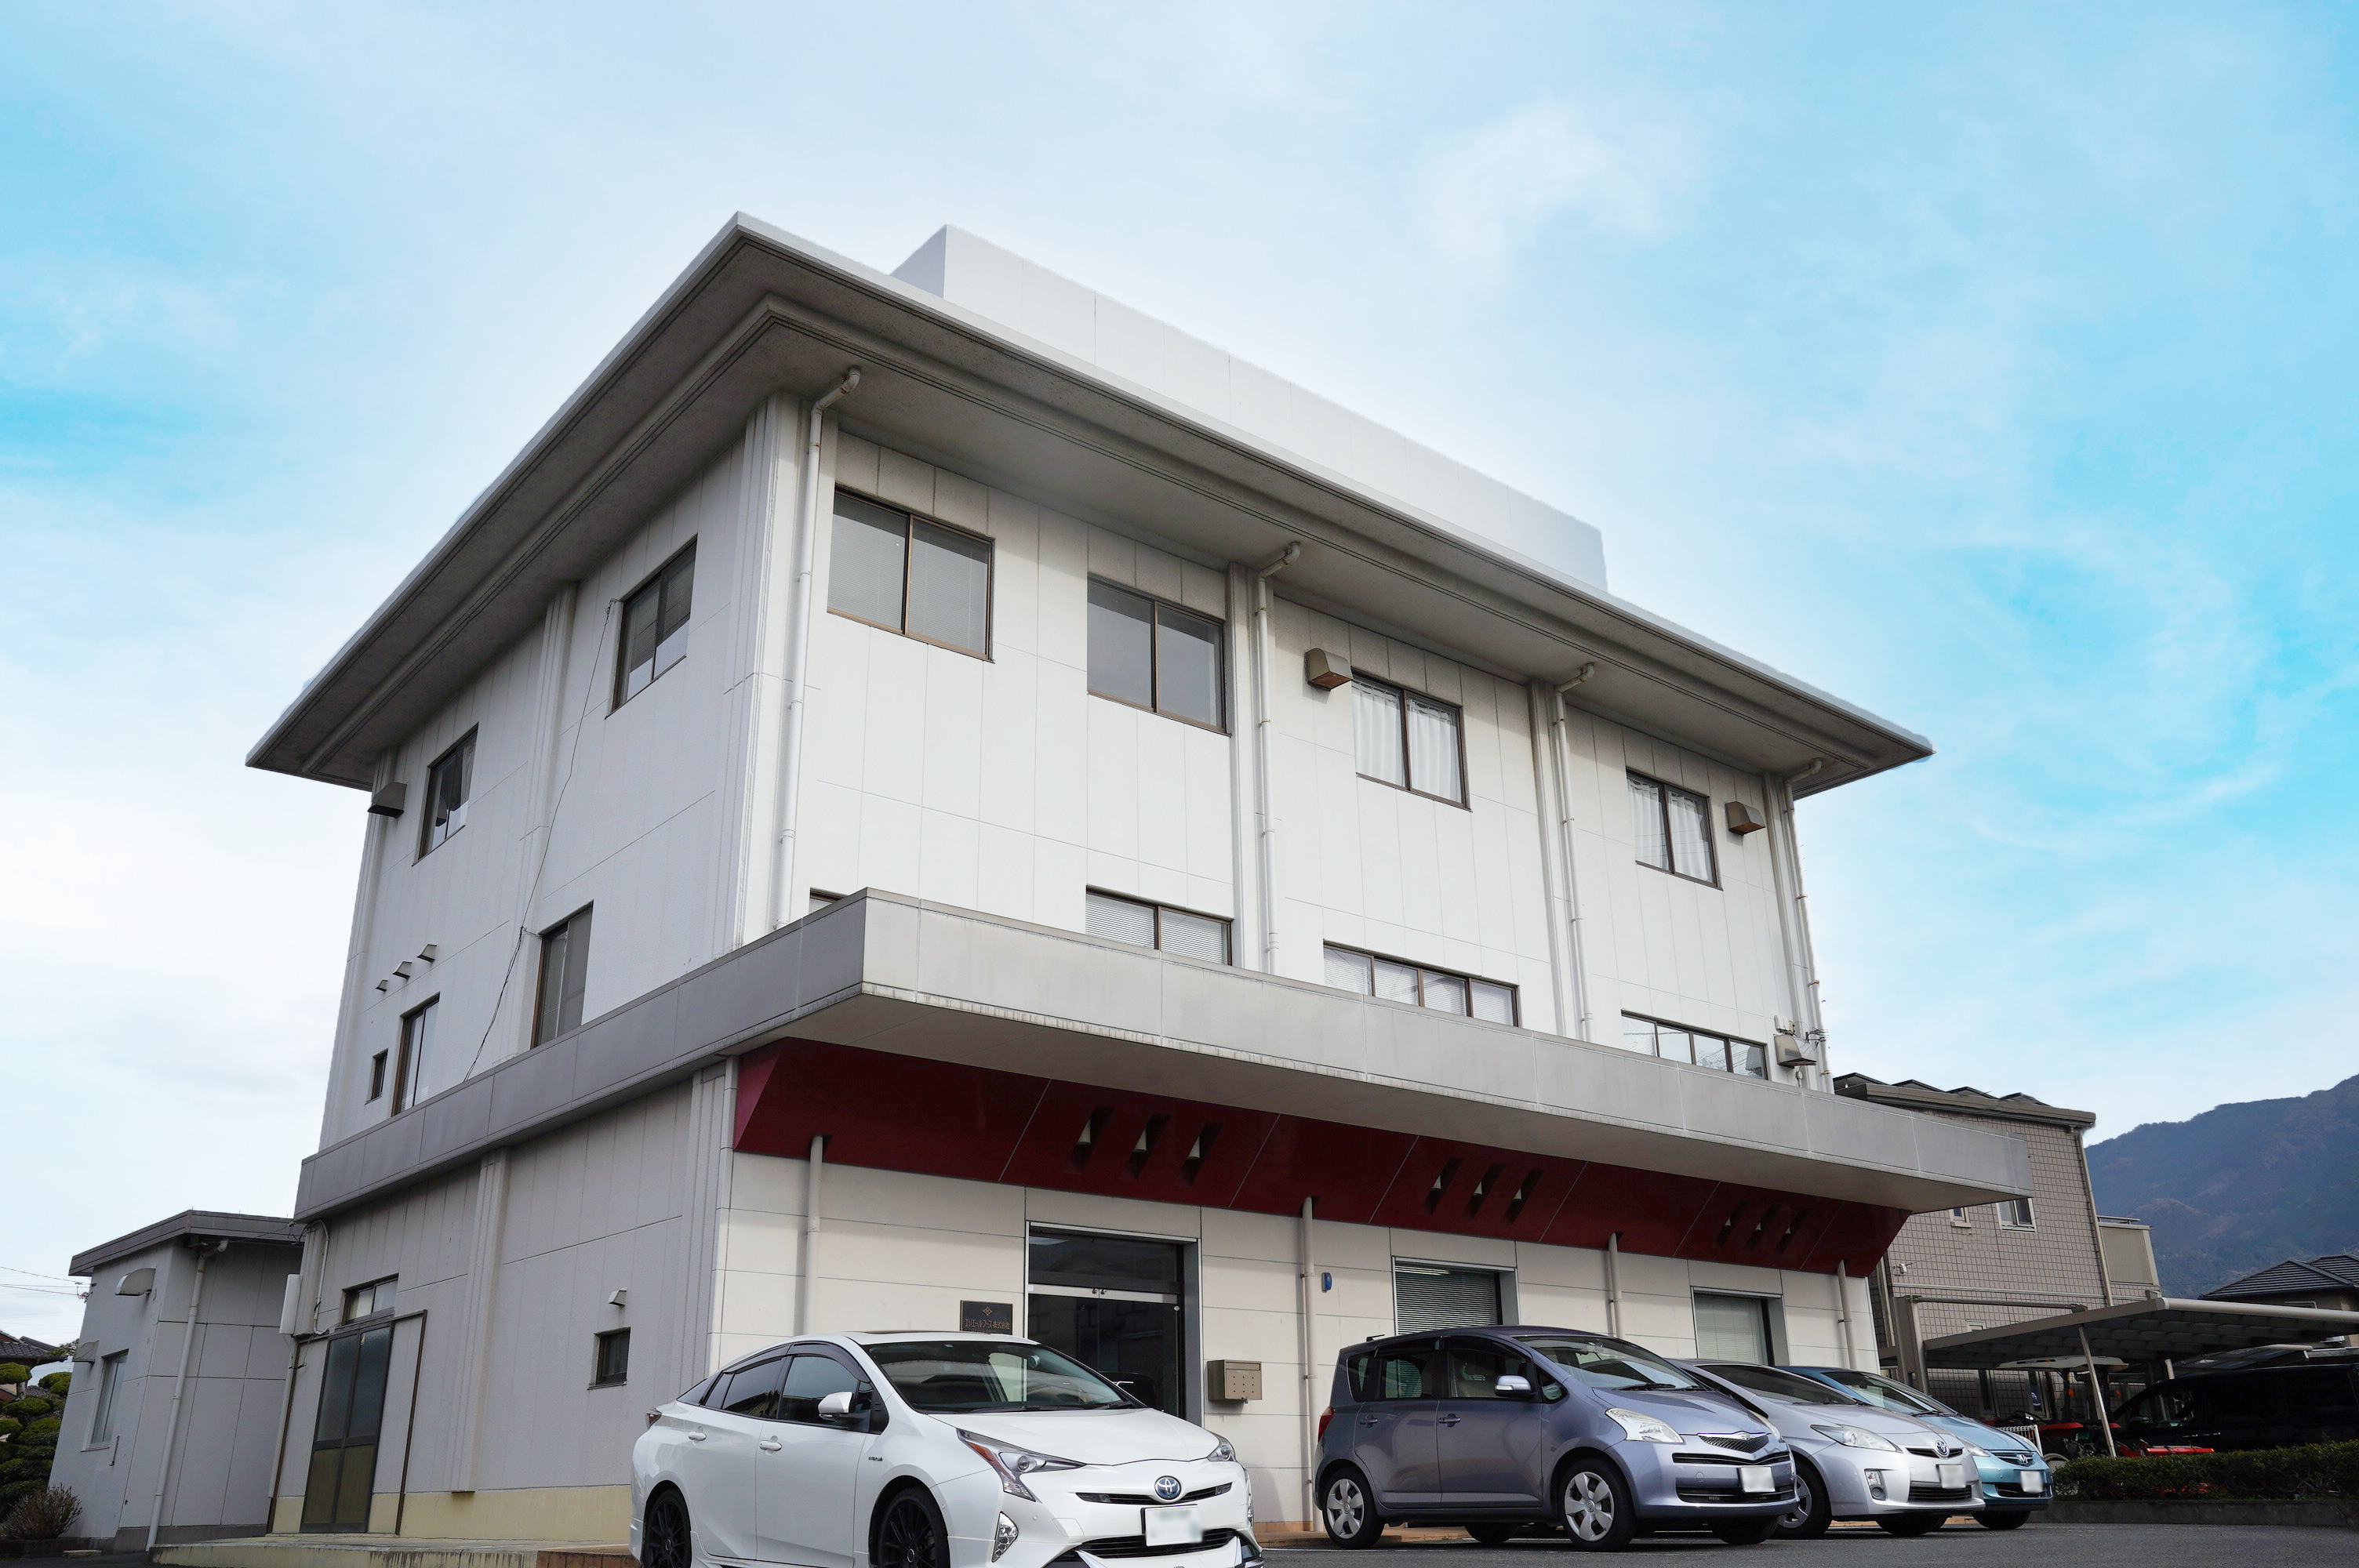 愛媛県四国中央市にある、エリエールフーズ株式会社の外観。